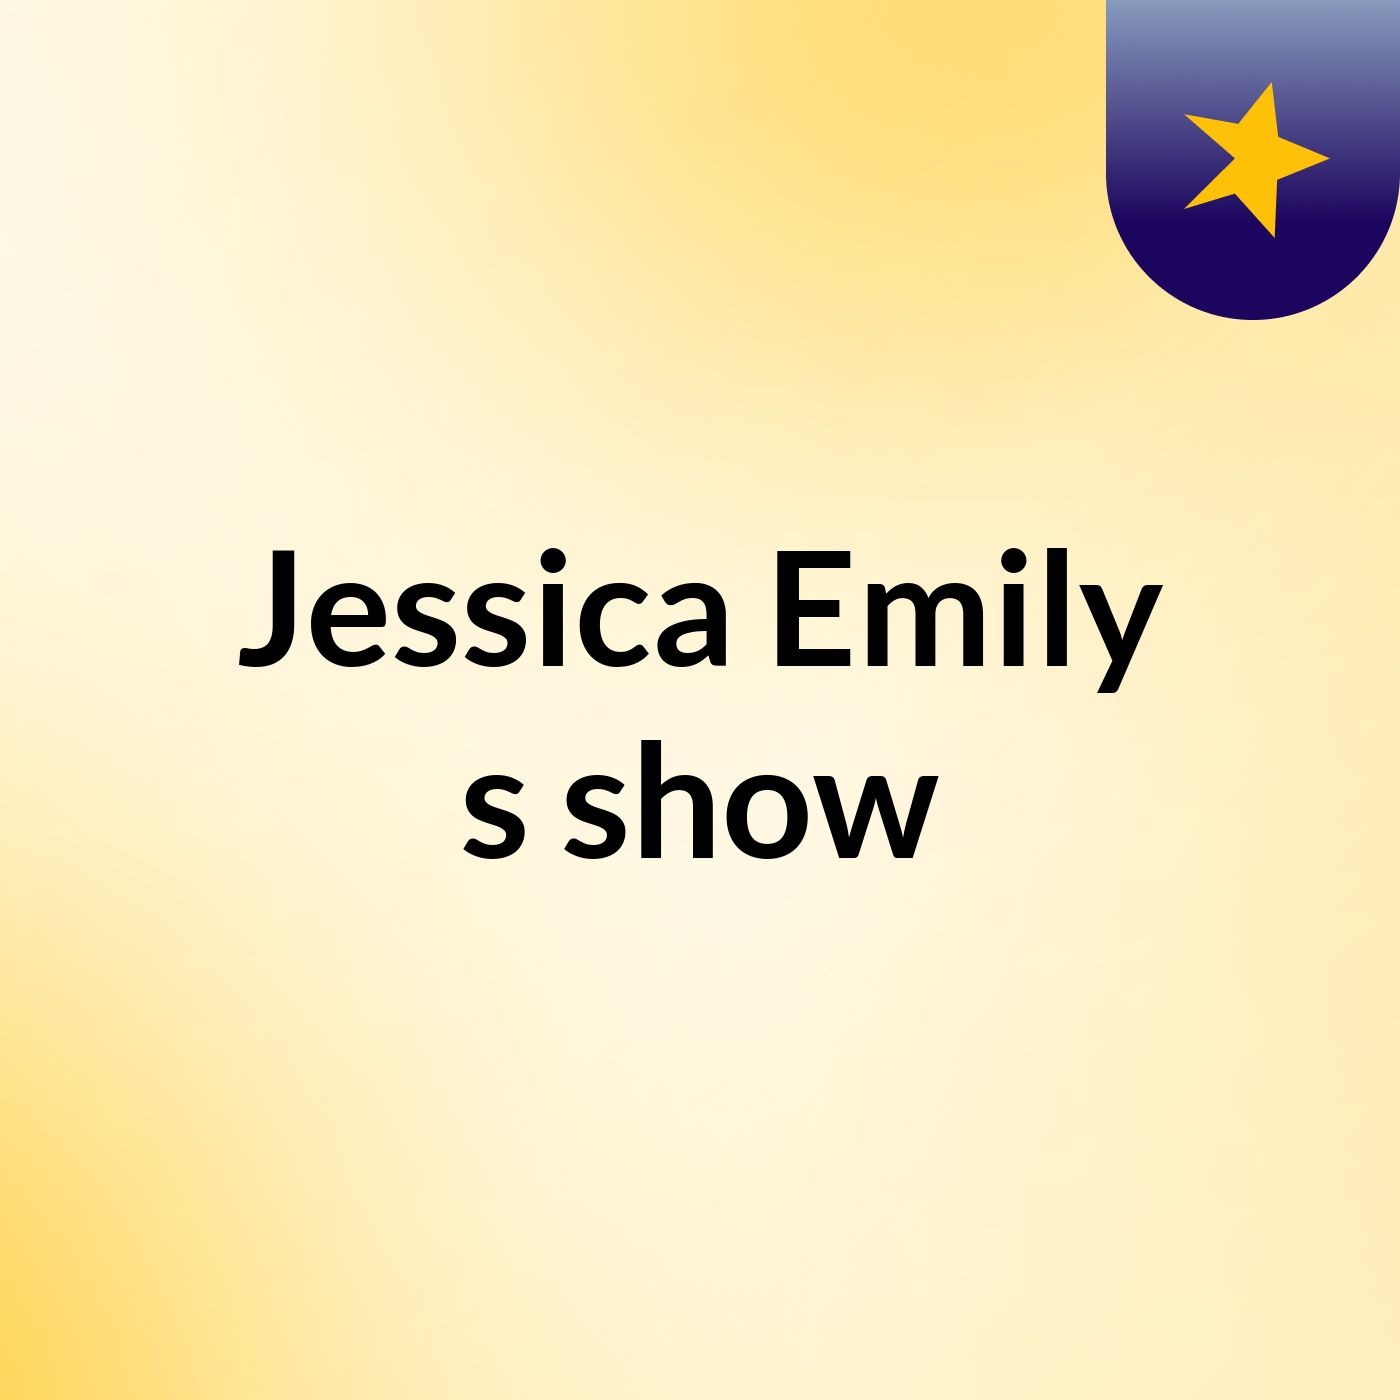 Jessica Emily's show